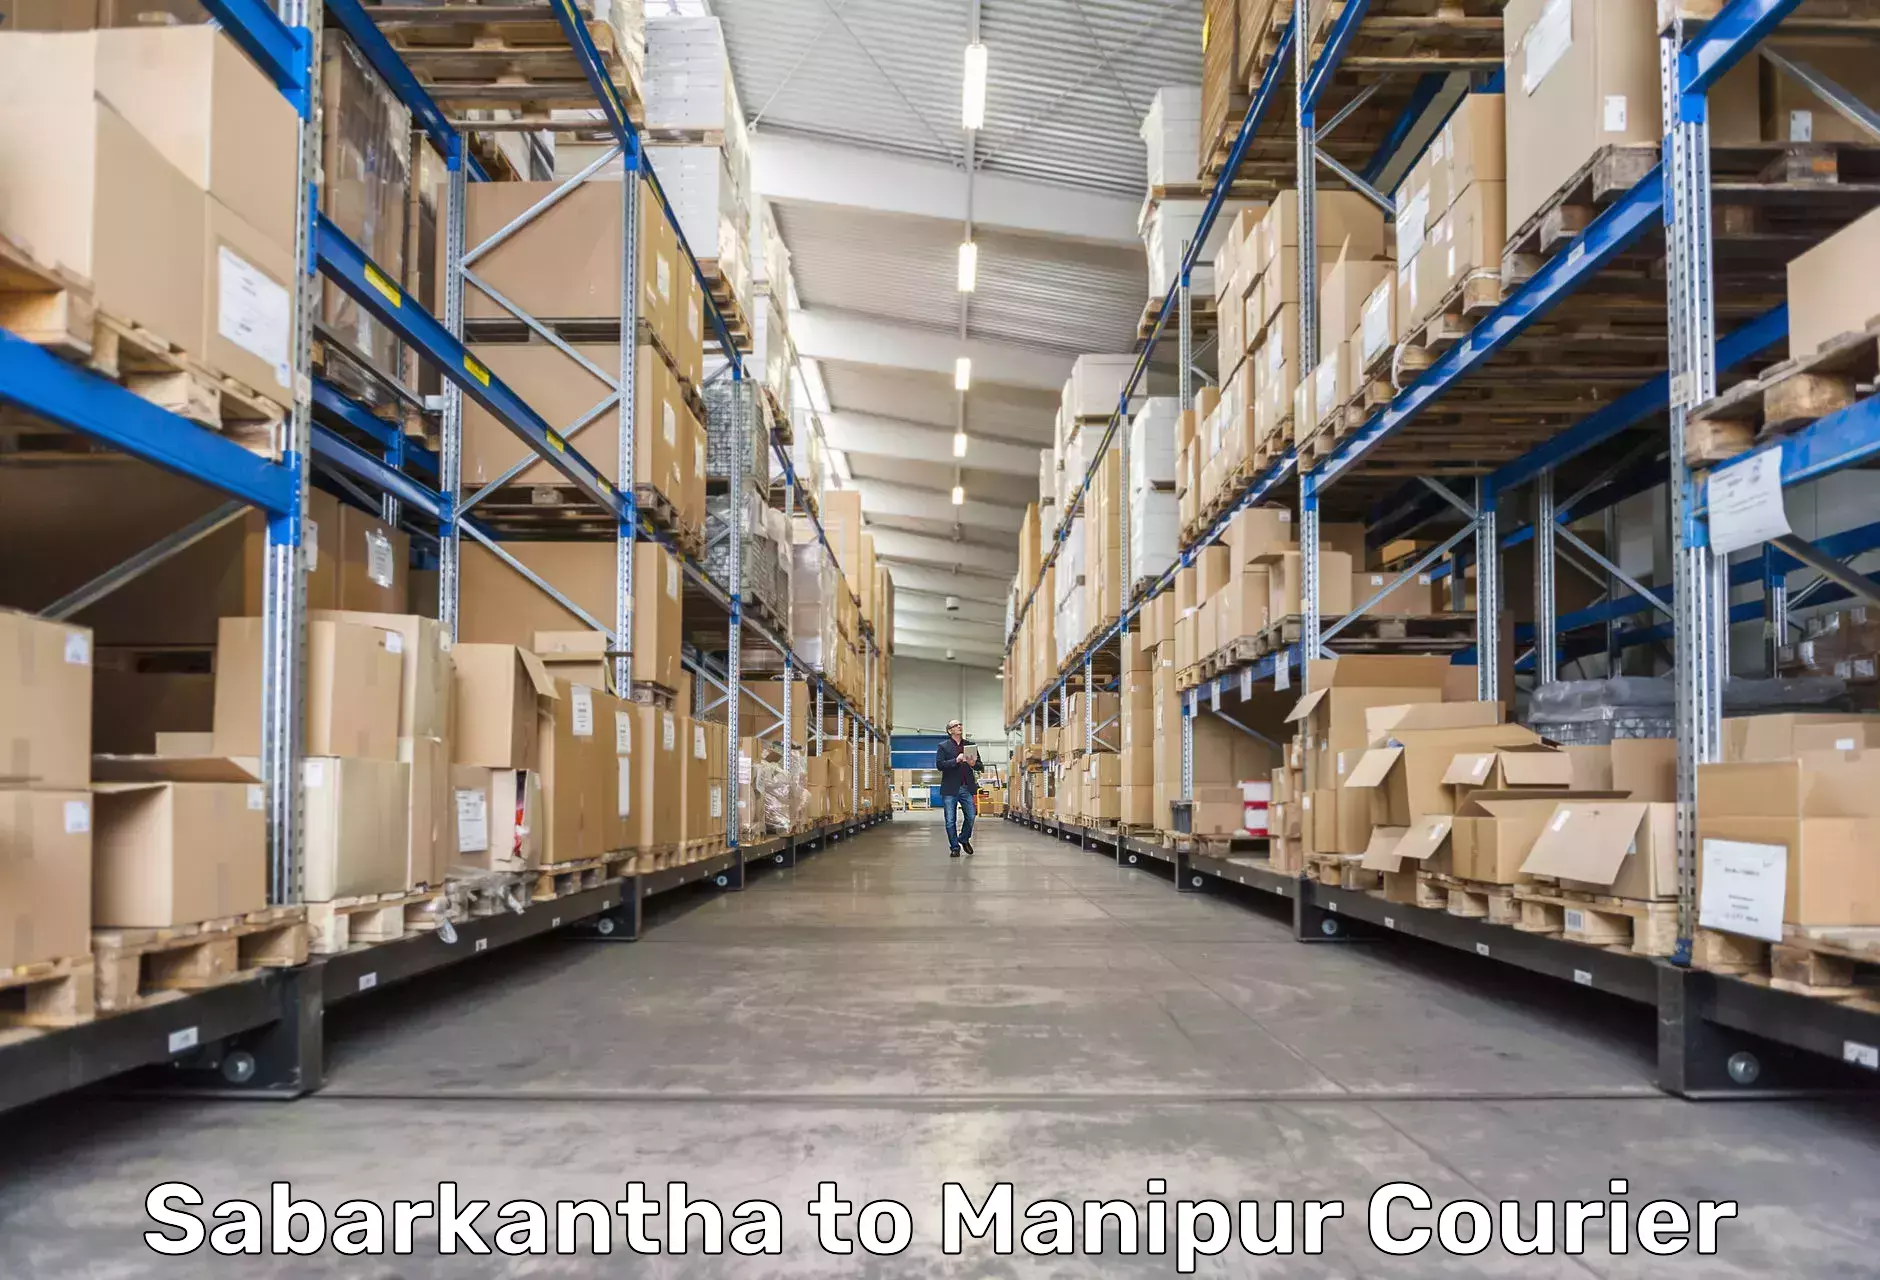 Doorstep delivery service Sabarkantha to Manipur